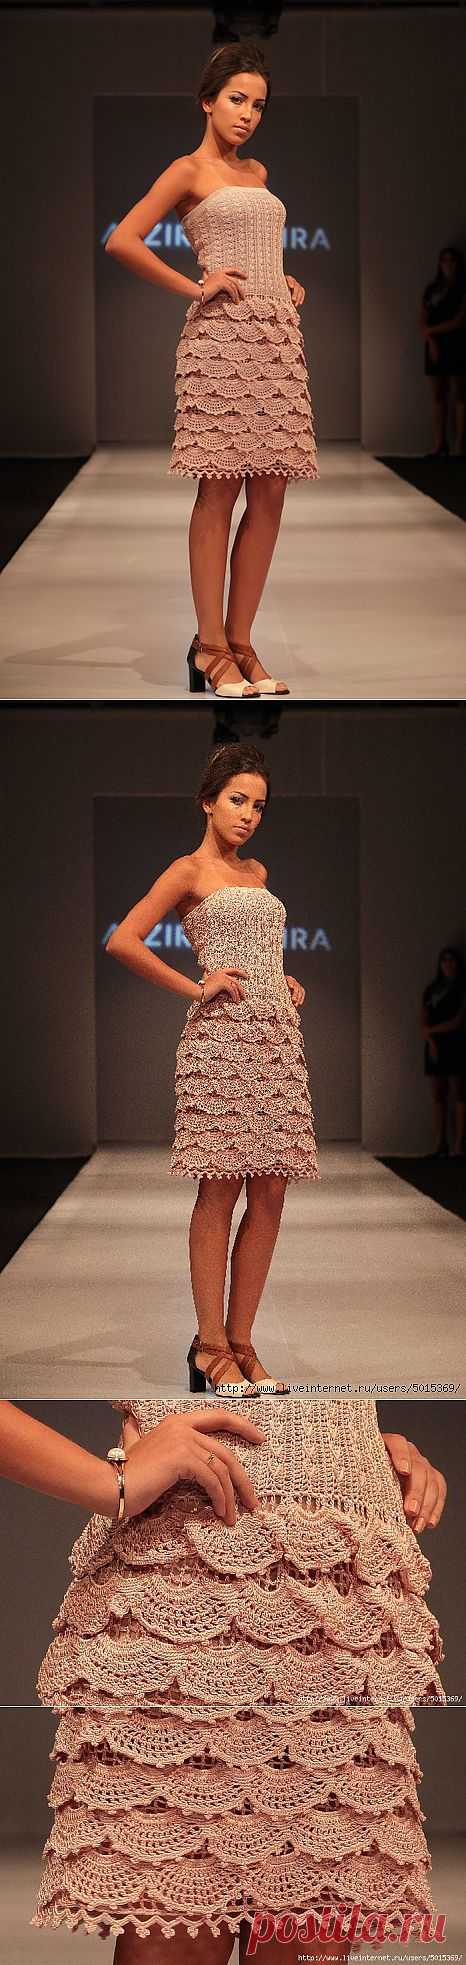 Платье "Стелла" от Alzira Vieira.